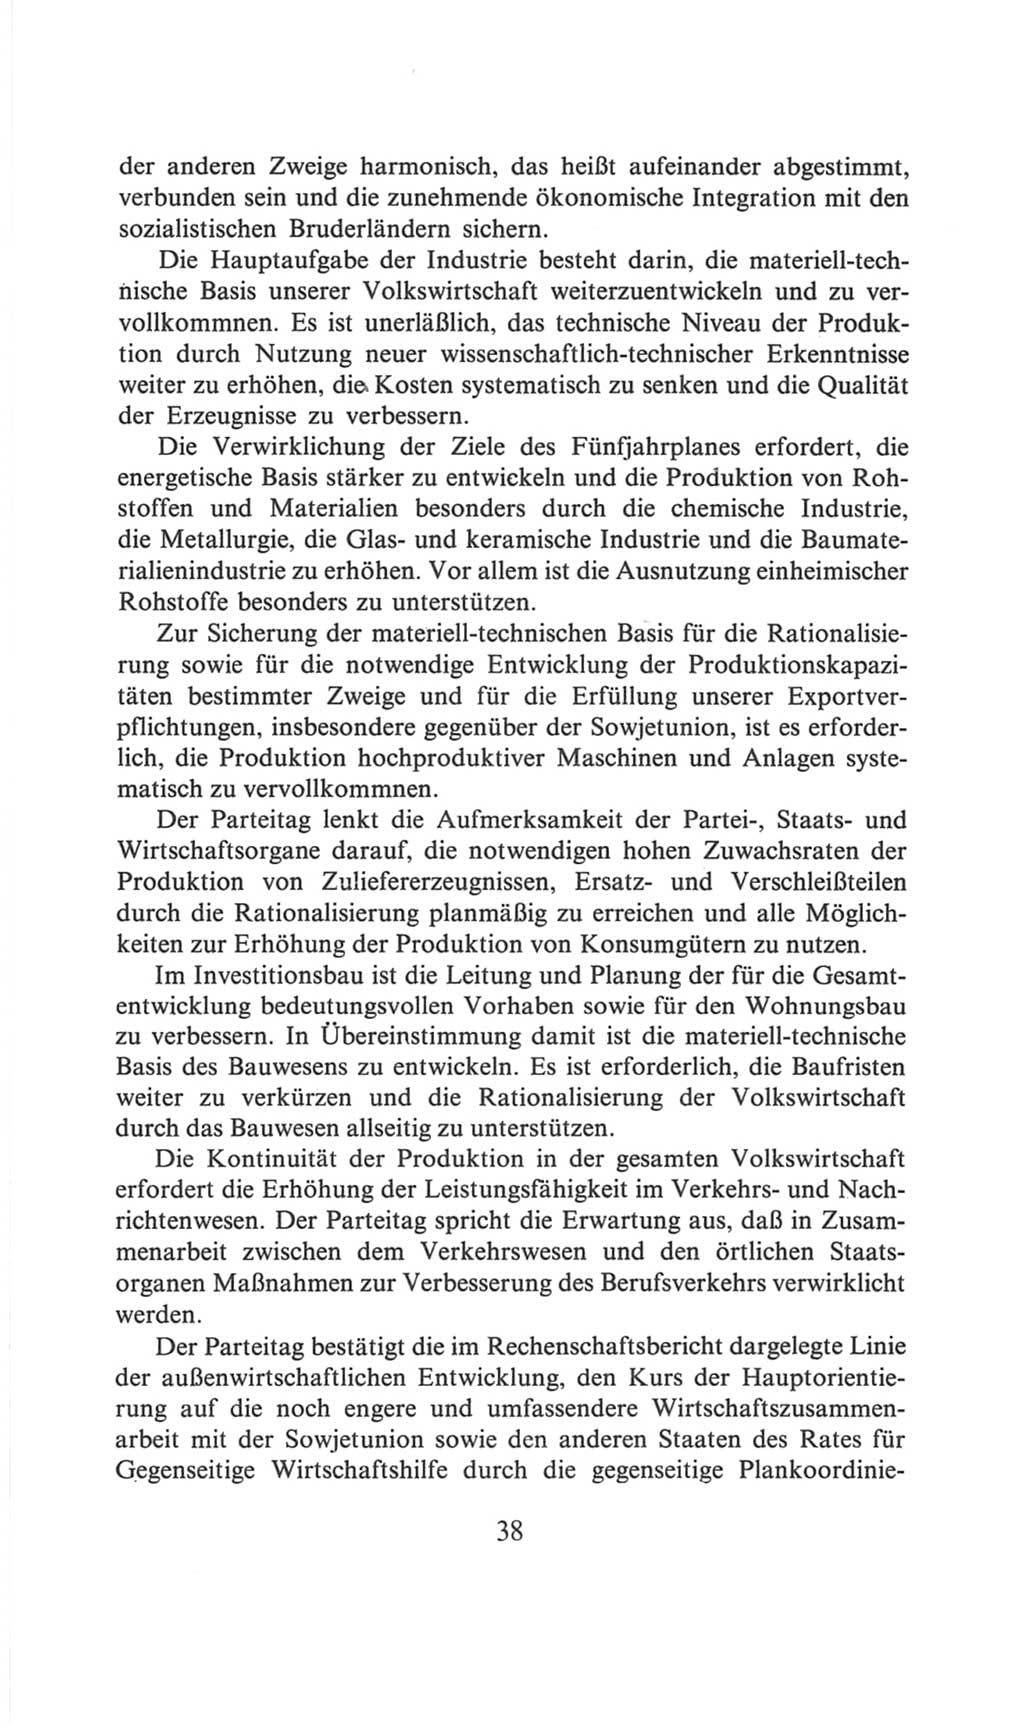 Volkskammer (VK) der Deutschen Demokratischen Republik (DDR), 6. Wahlperiode 1971-1976, Seite 38 (VK. DDR 6. WP. 1971-1976, S. 38)